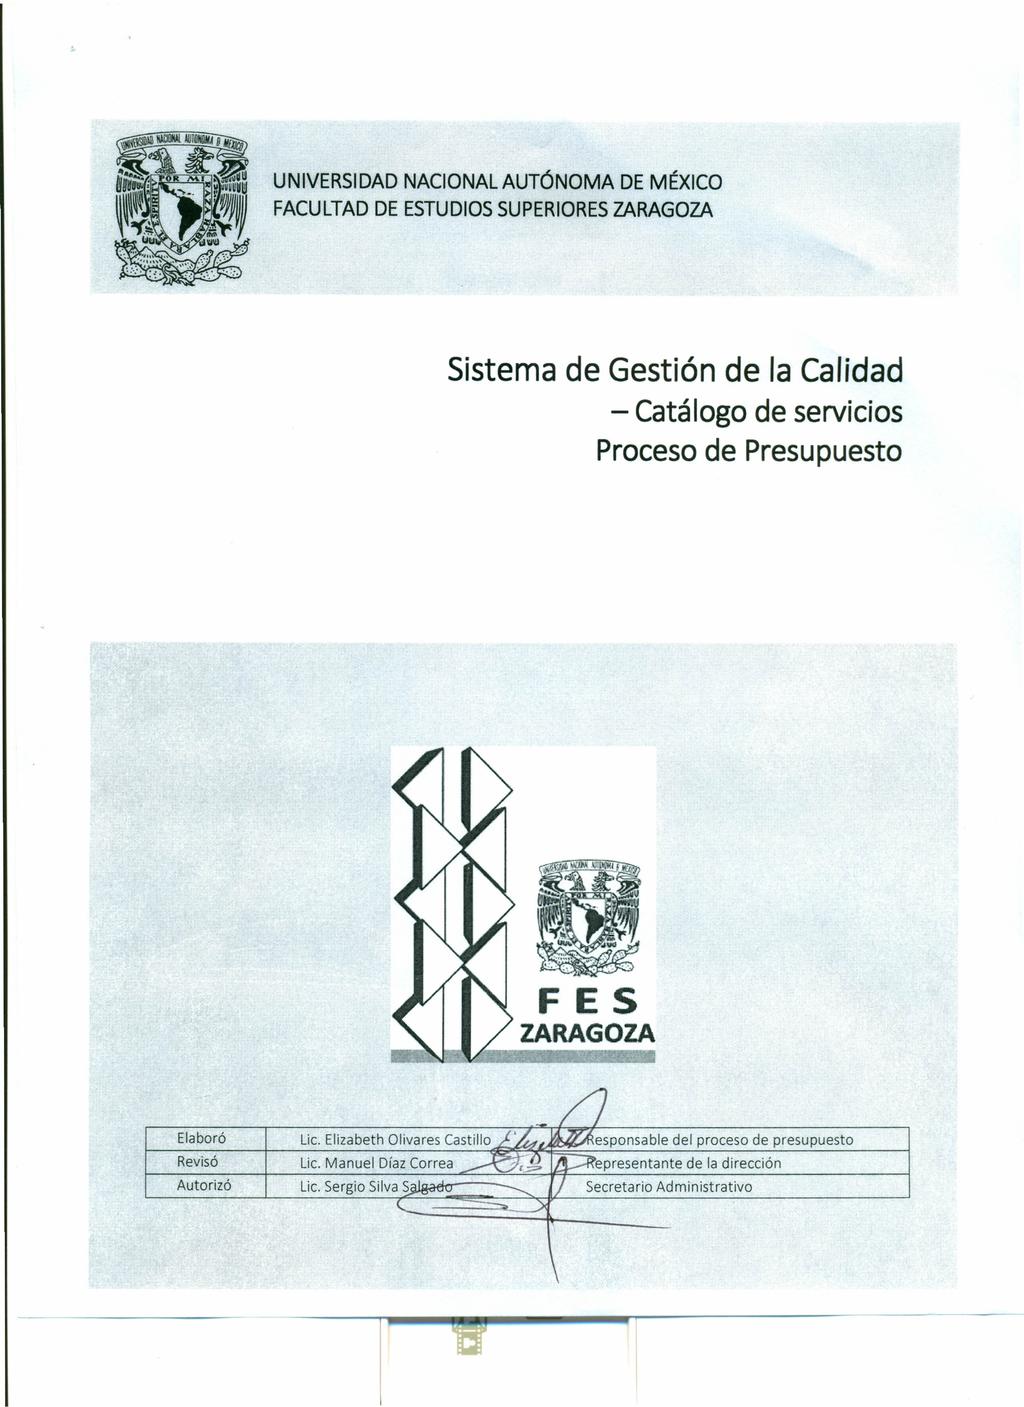 UNIVERSIDAD NACIONAL AUTÓNOMA DE MÉXICO FACULTAD DE ESTUDIOS SUPERIORES ZARAGOZA Sistema de Gestión de la Calidad - Catálogo de servicios